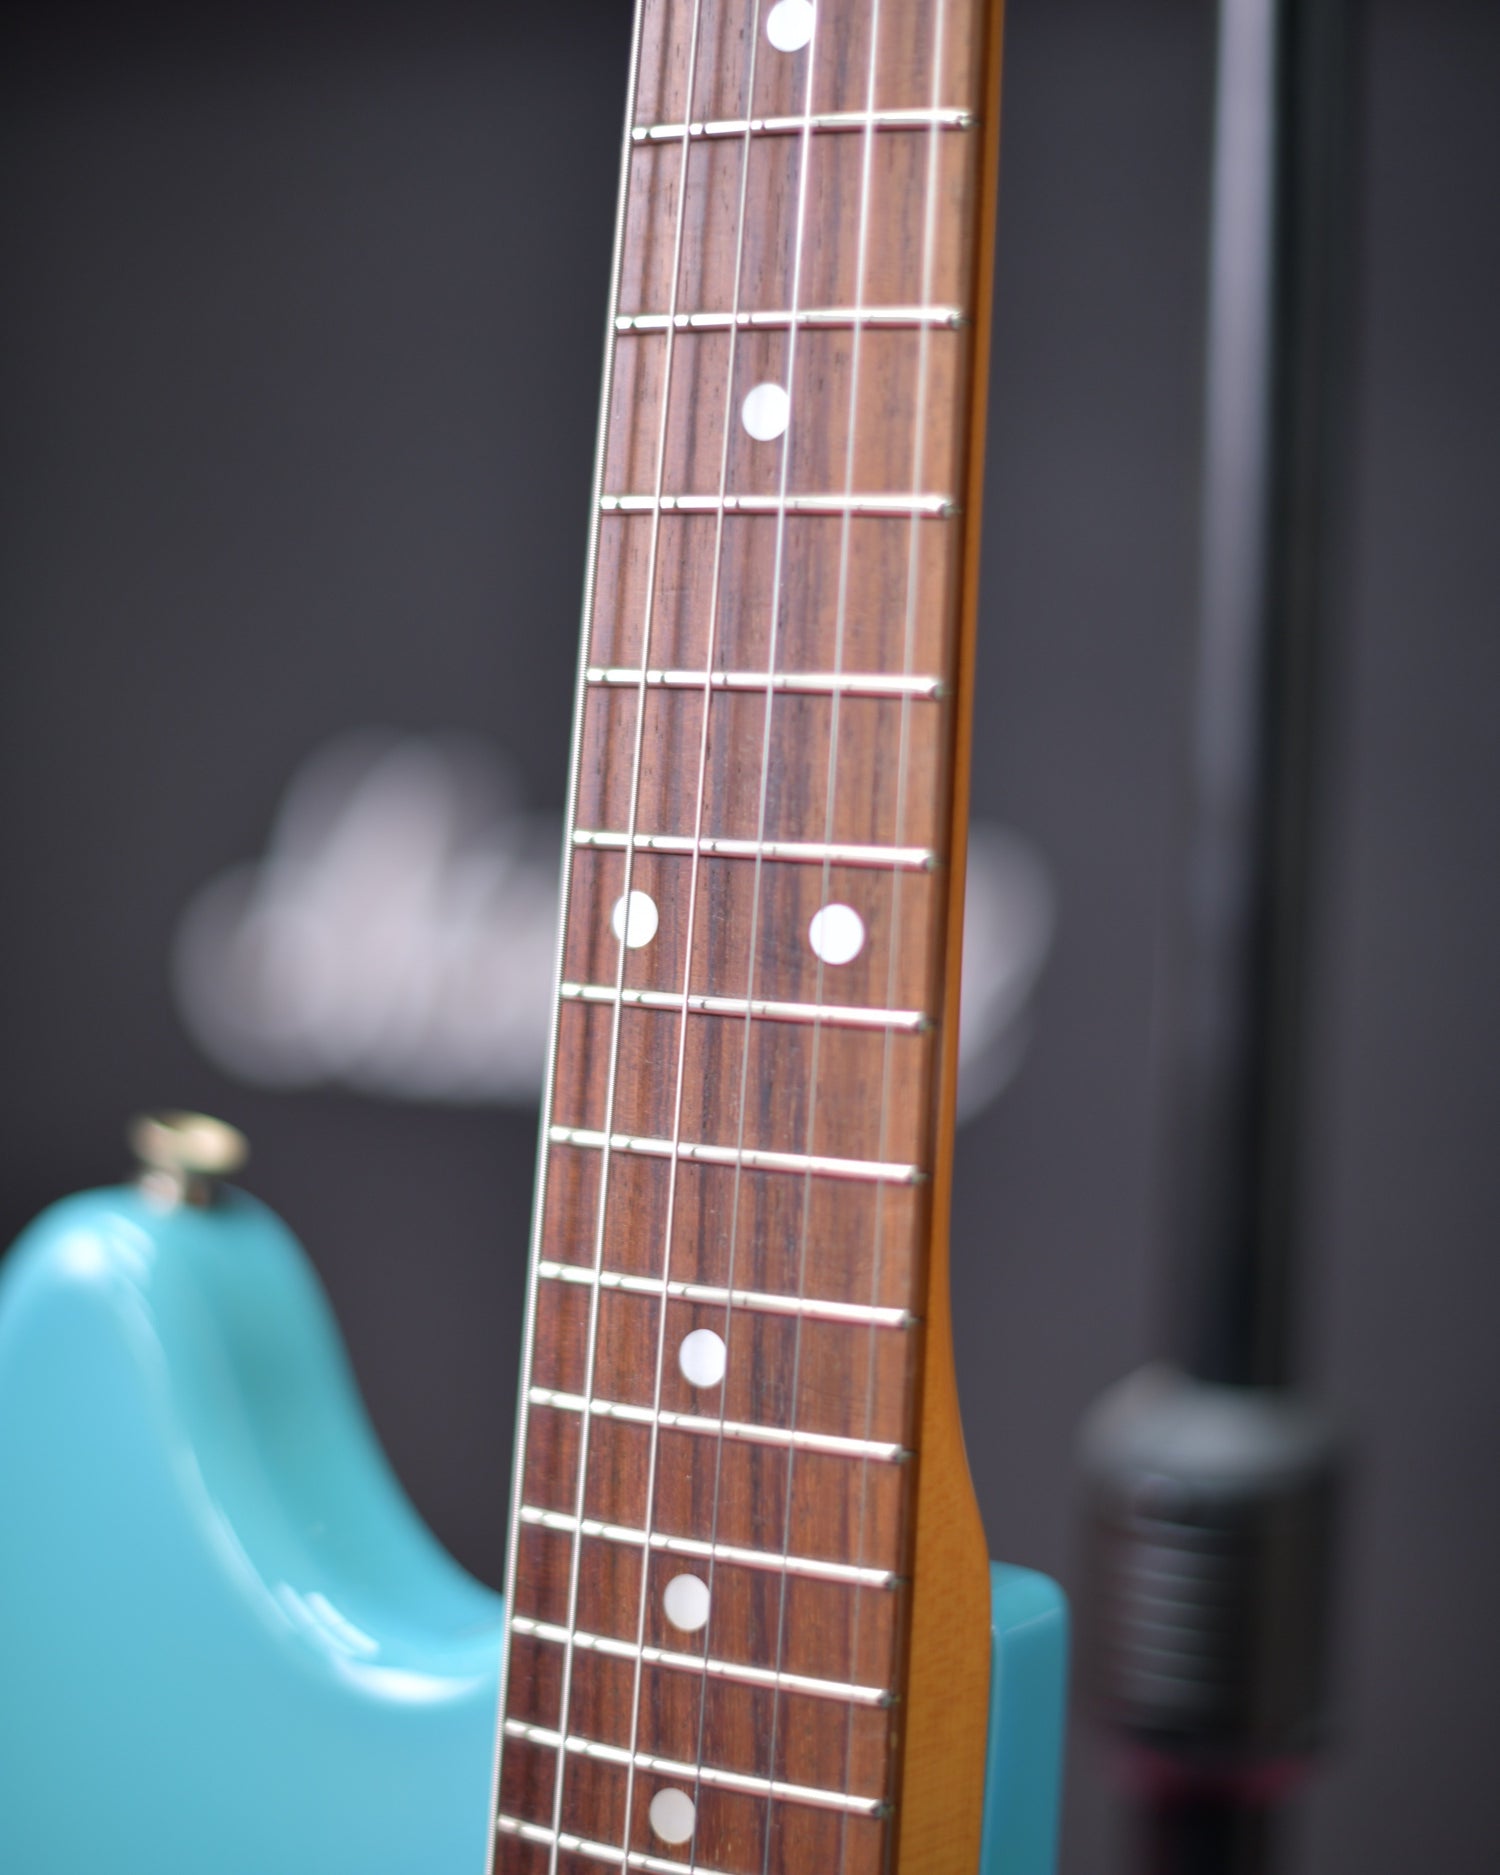 Fender Japan Mustang CIJ Q Serial Daphne Blue 2002